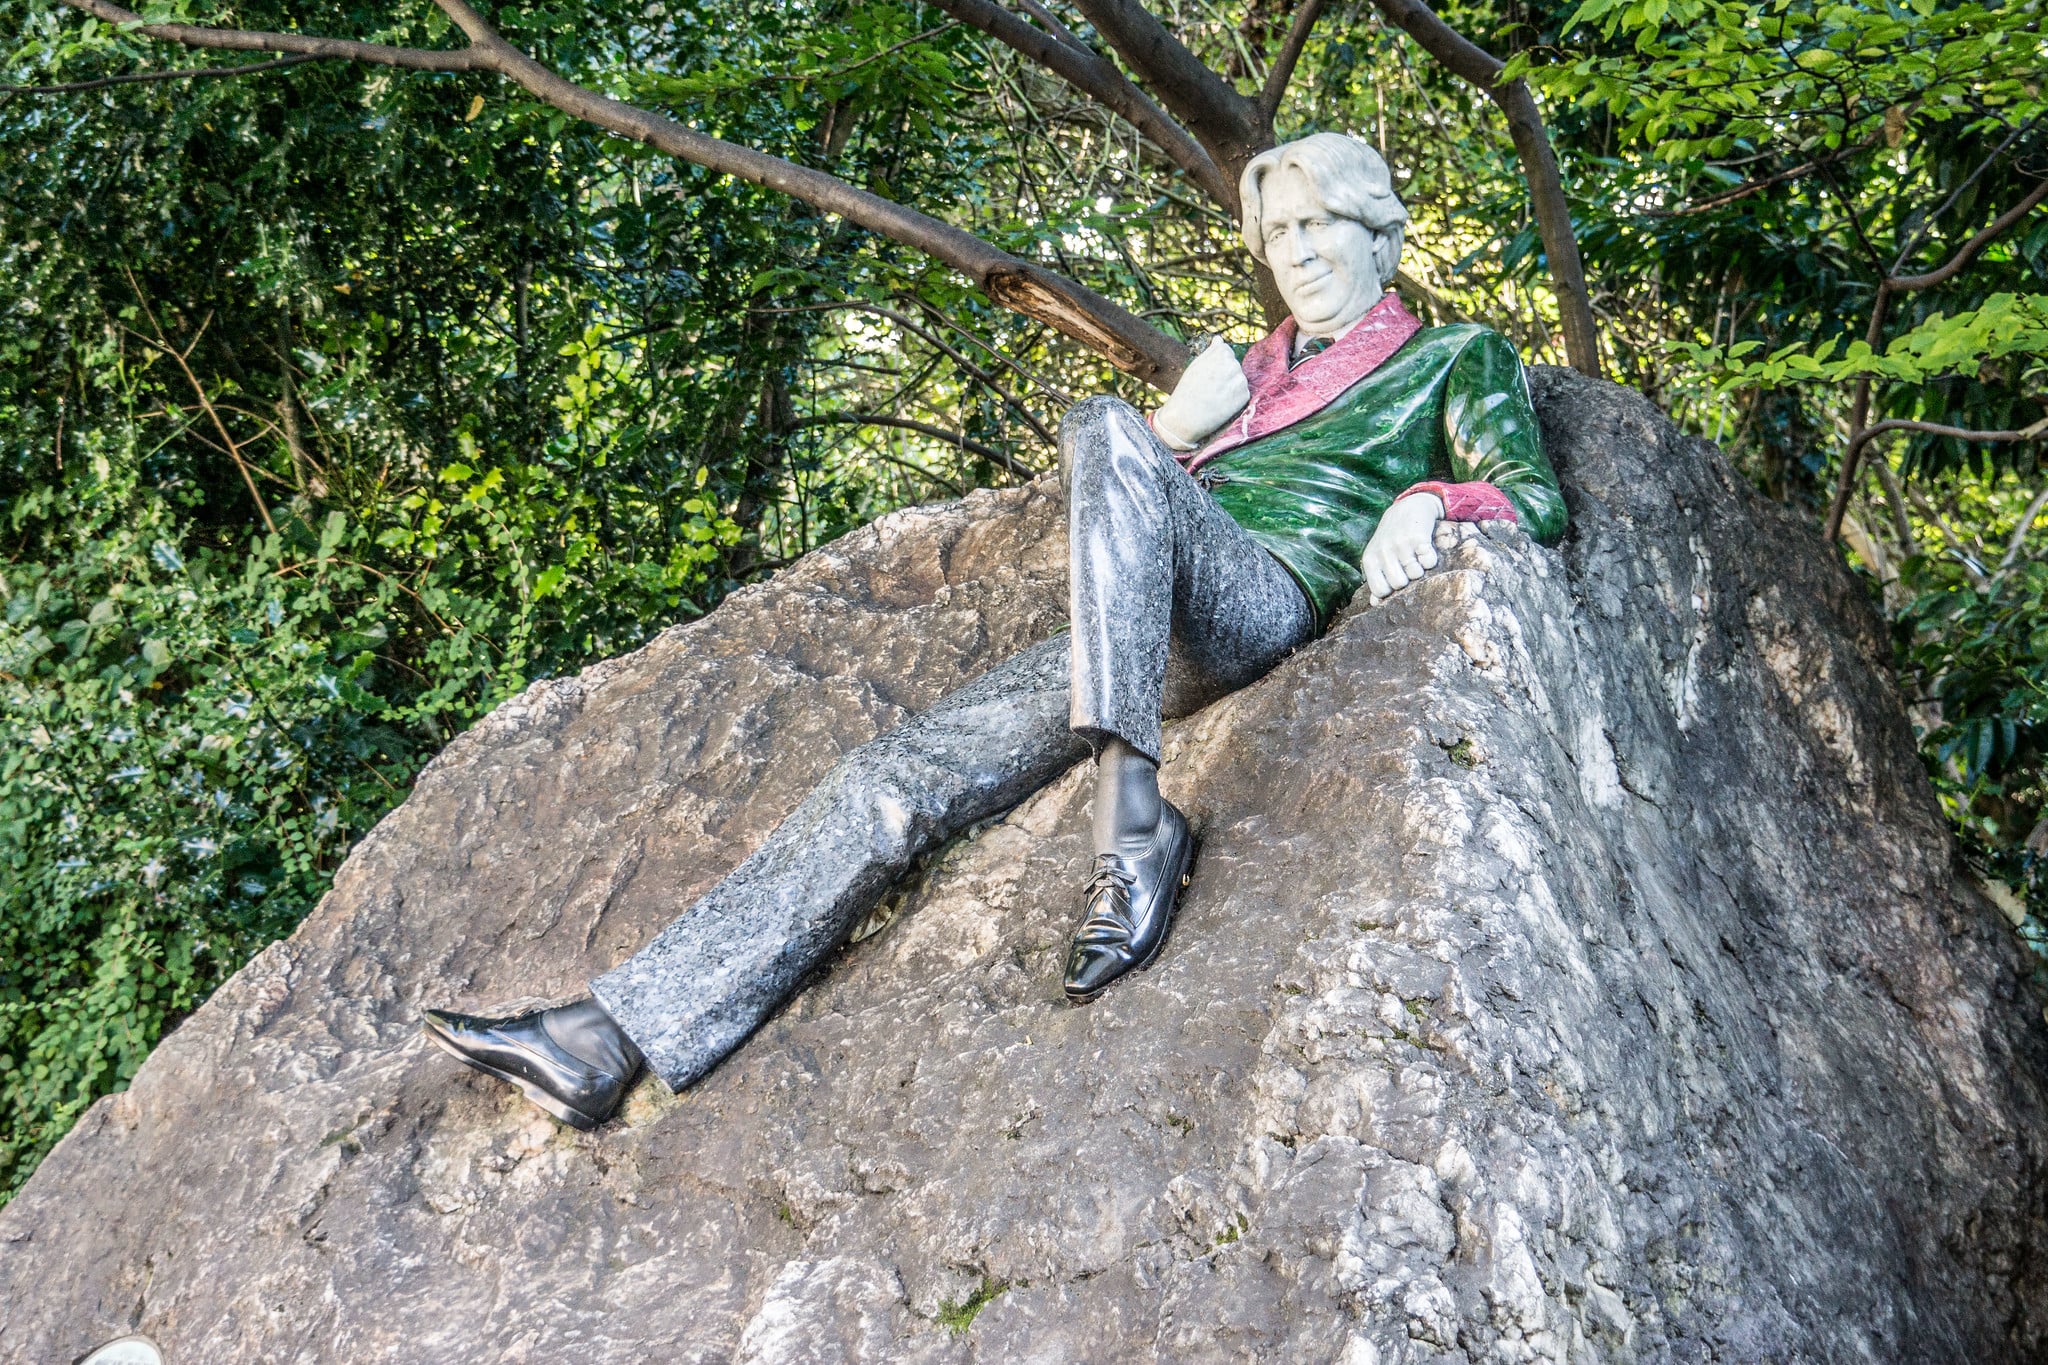 The Oscar Wilde statue in Dublin is off the beaten path in Ireland